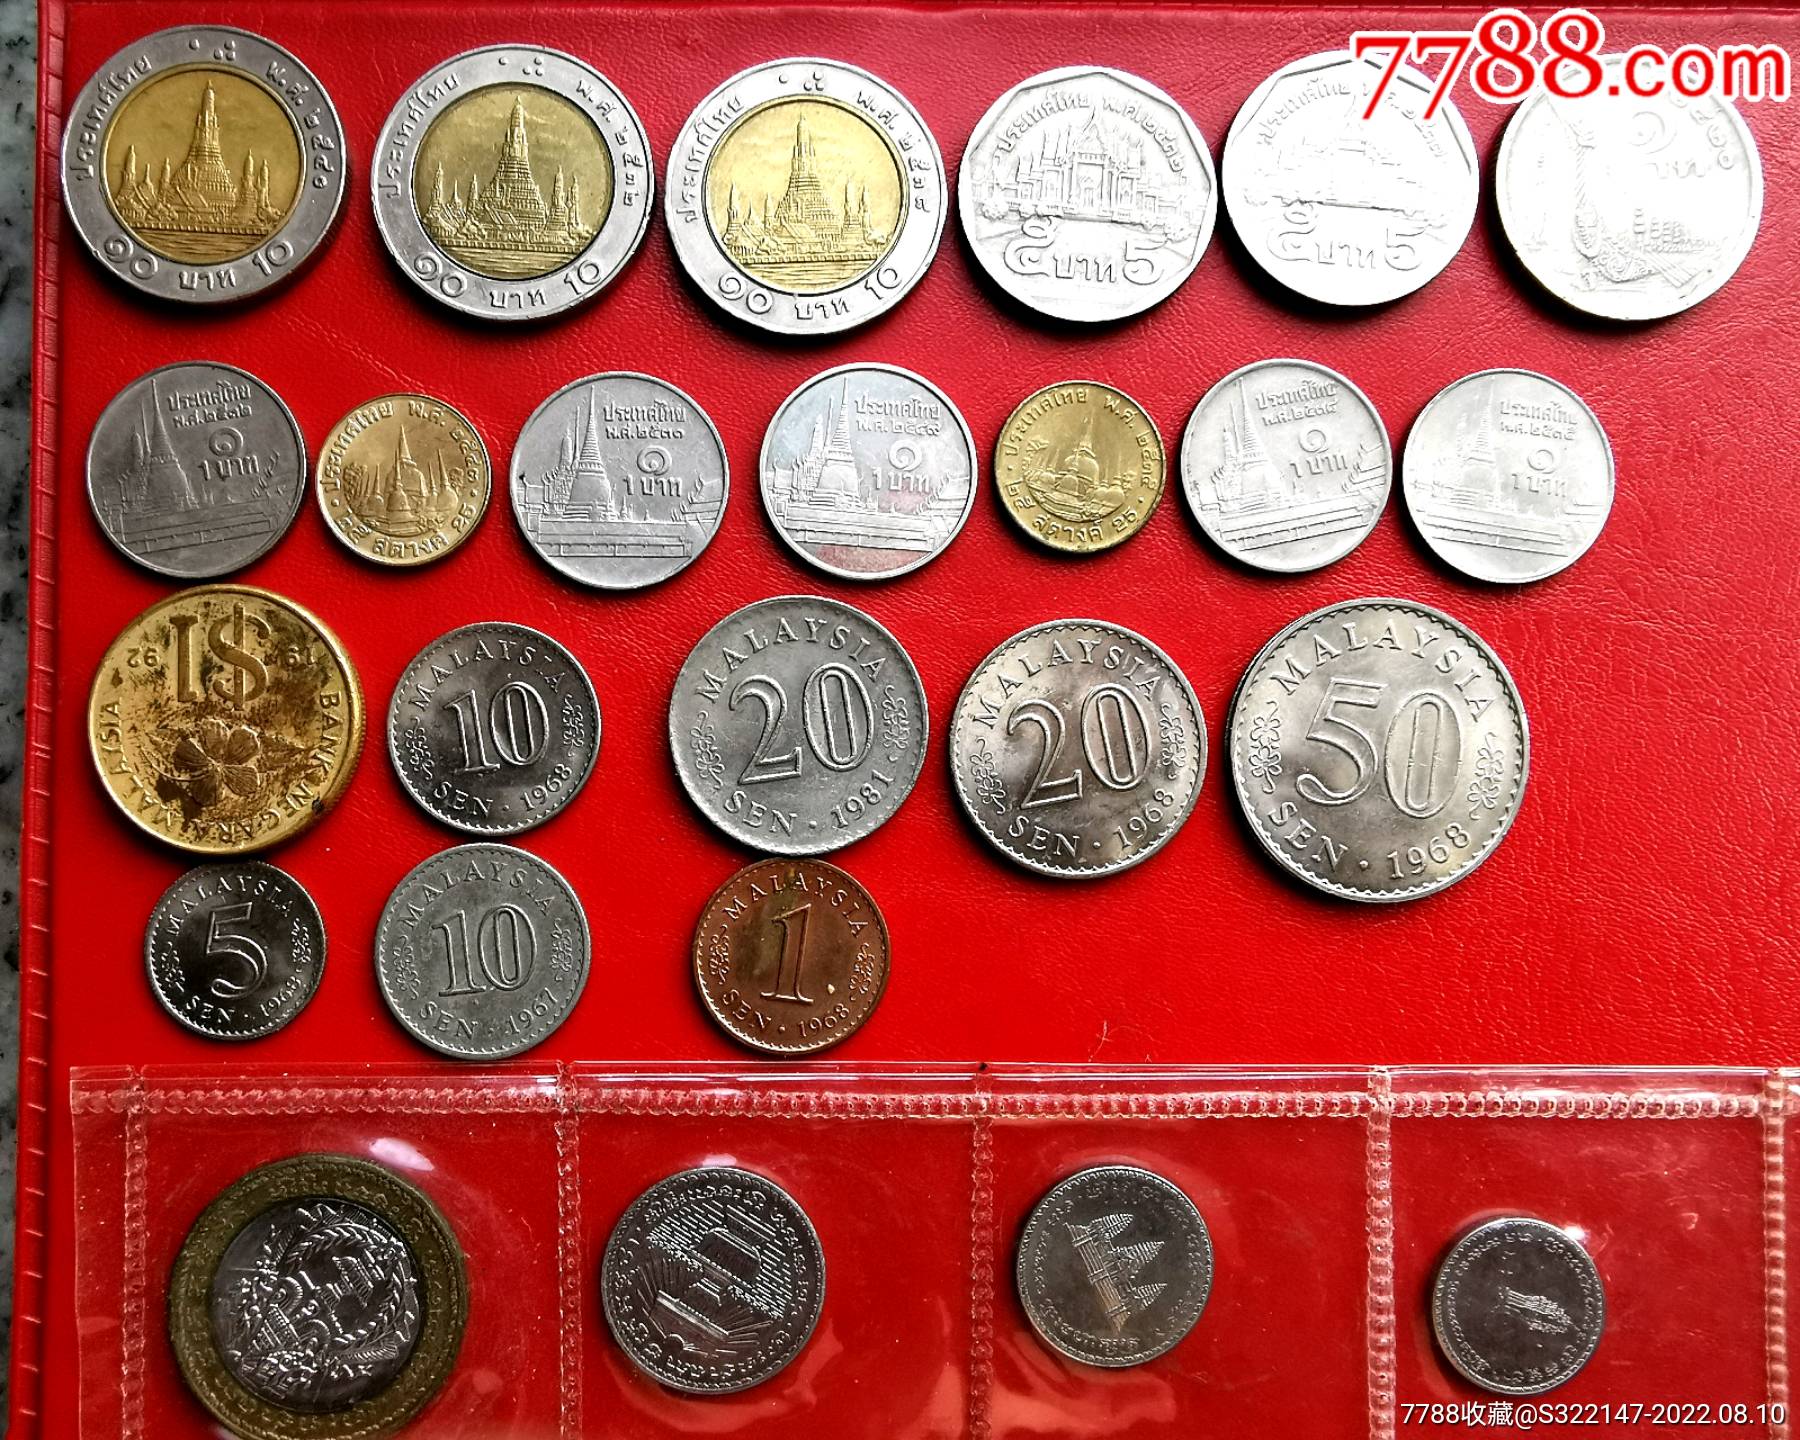 泰国硬币图片及价格表,一泰铢等于多少人民币 - 伤感说说吧